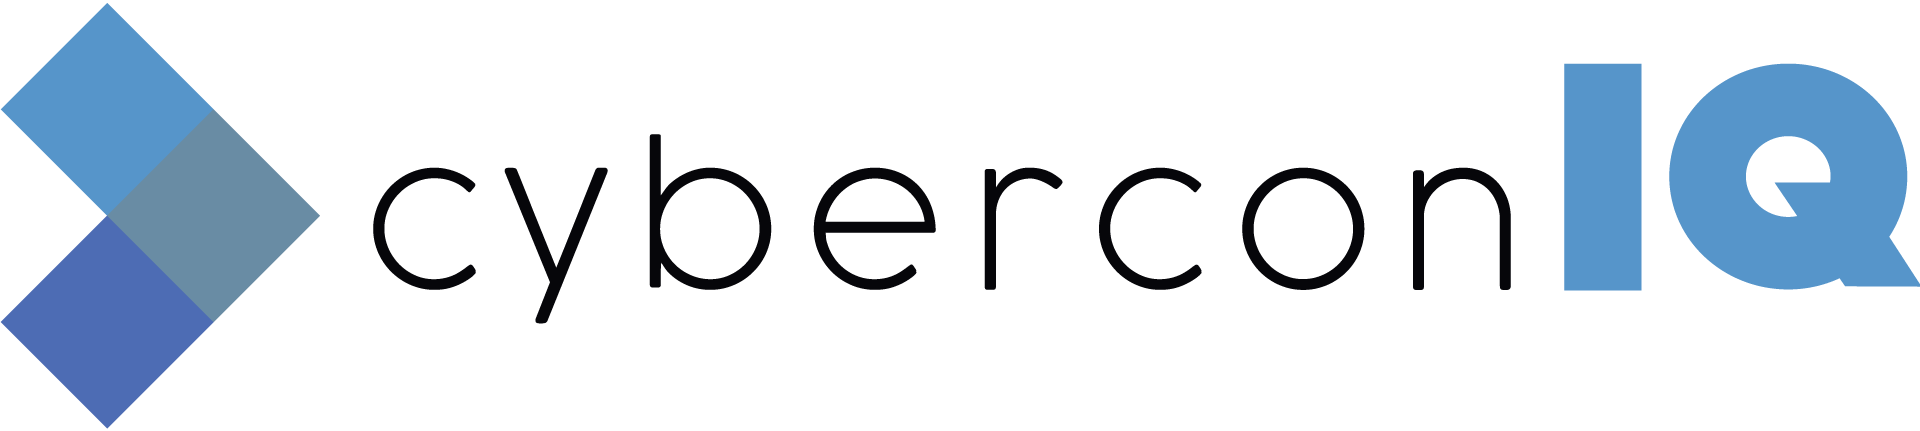 cyberconIQ--Corp-Logo--Color-black